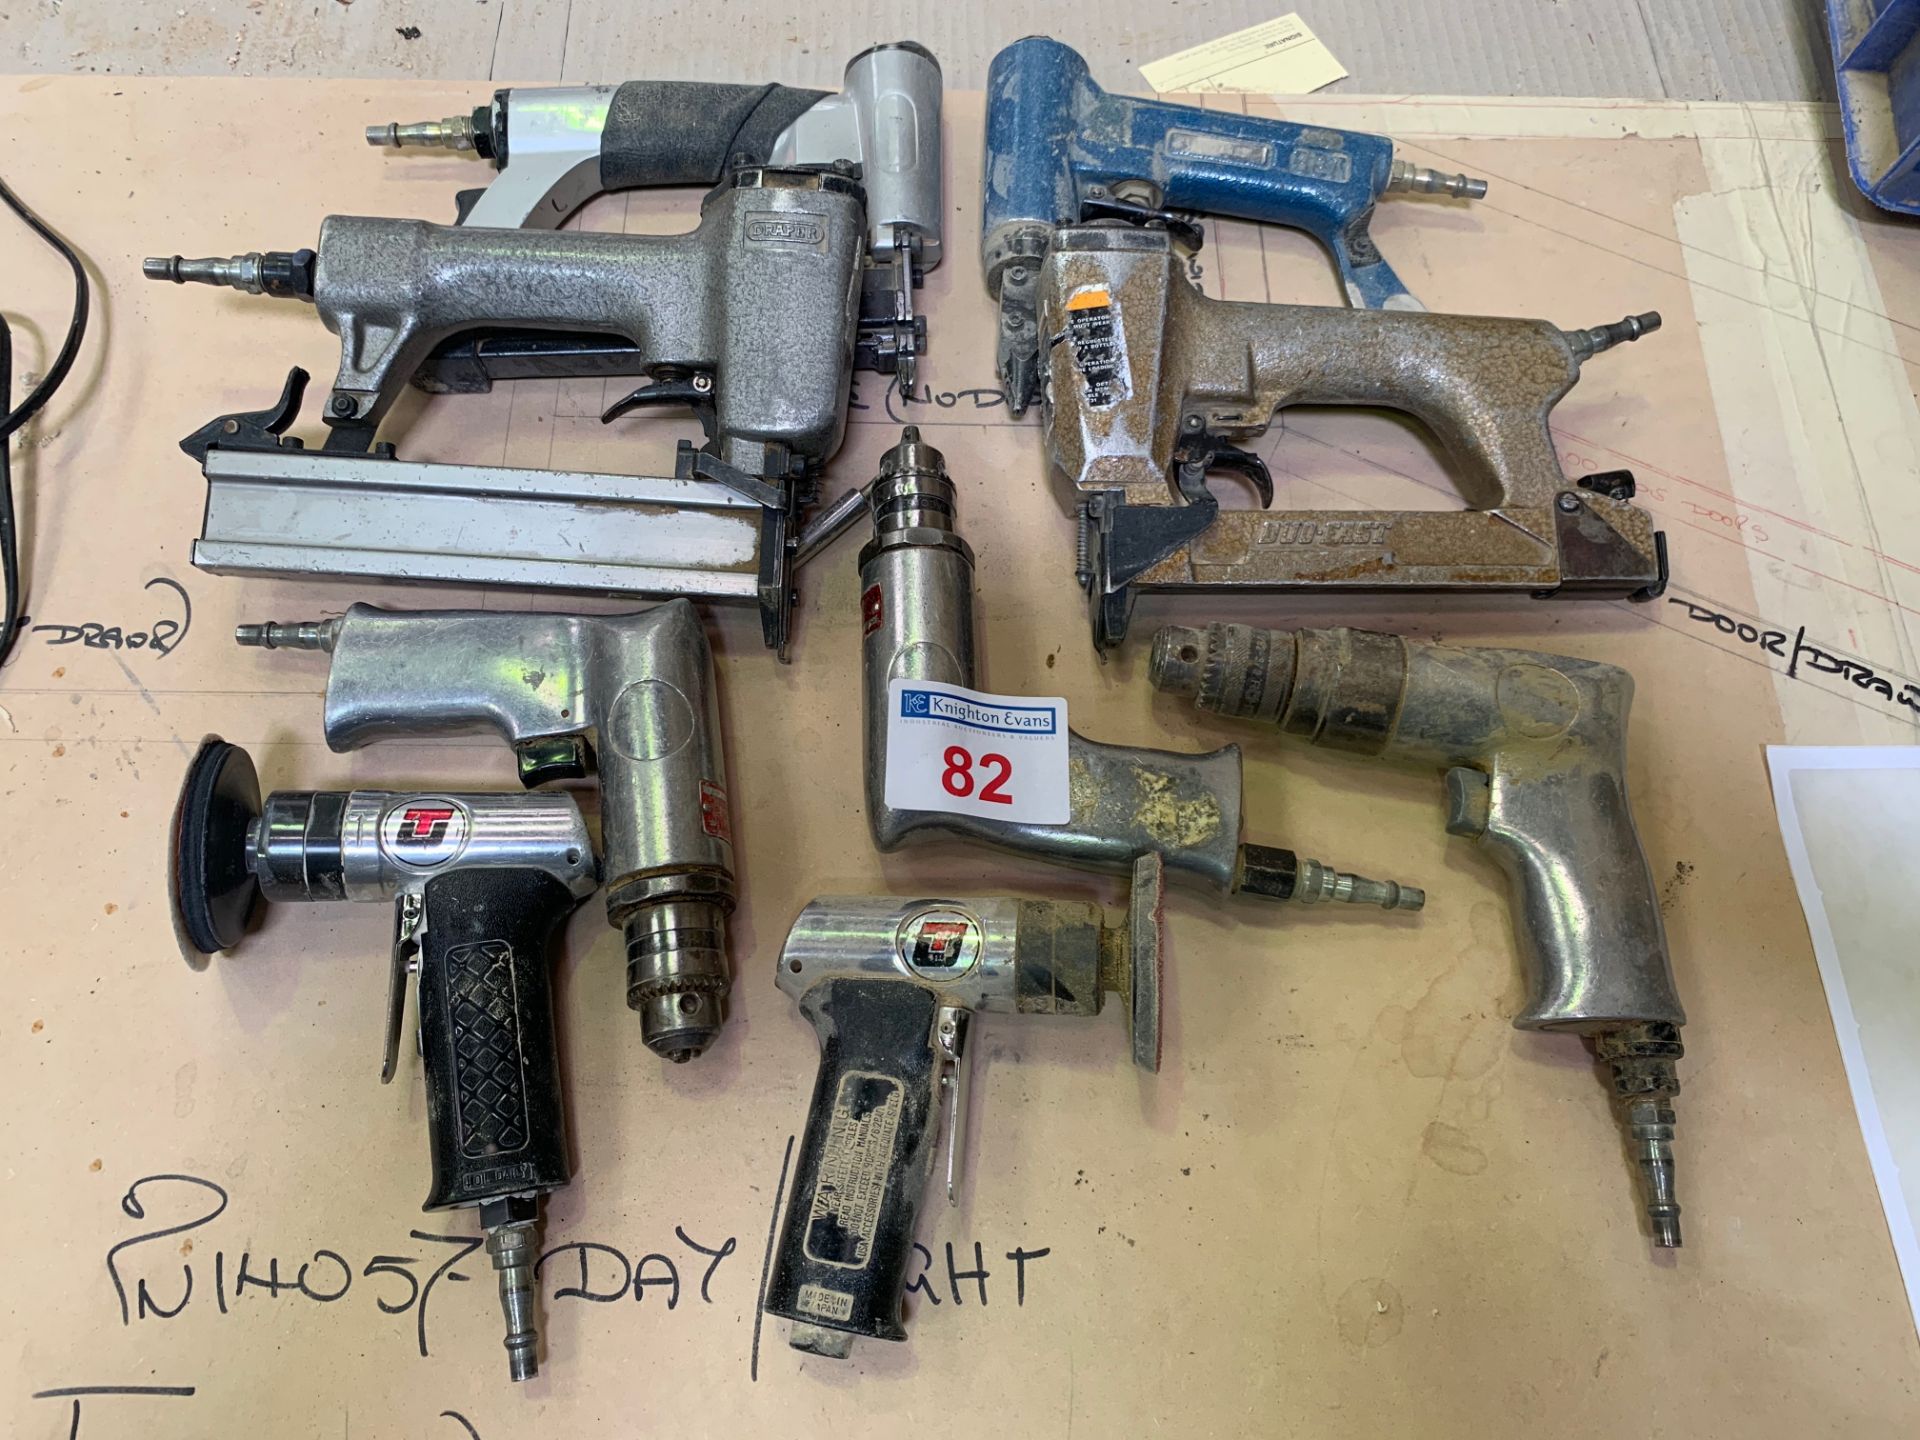 A quantity of air tools as per photo